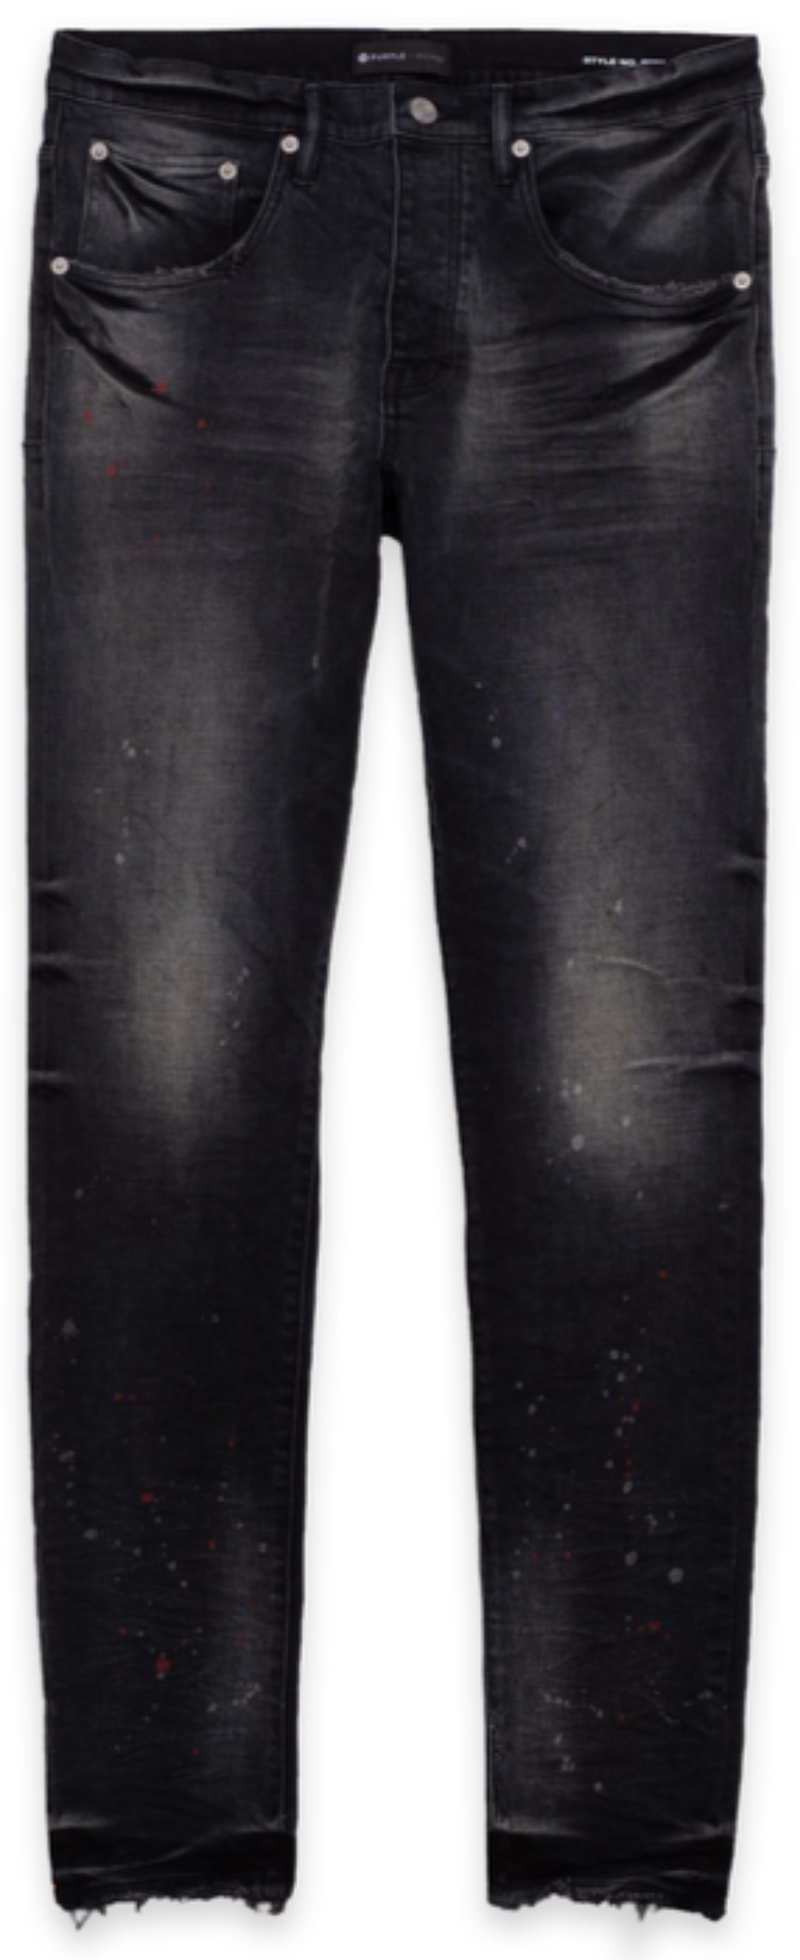 Purple Denim Jeans  - P002 VSB Black - Action Wear